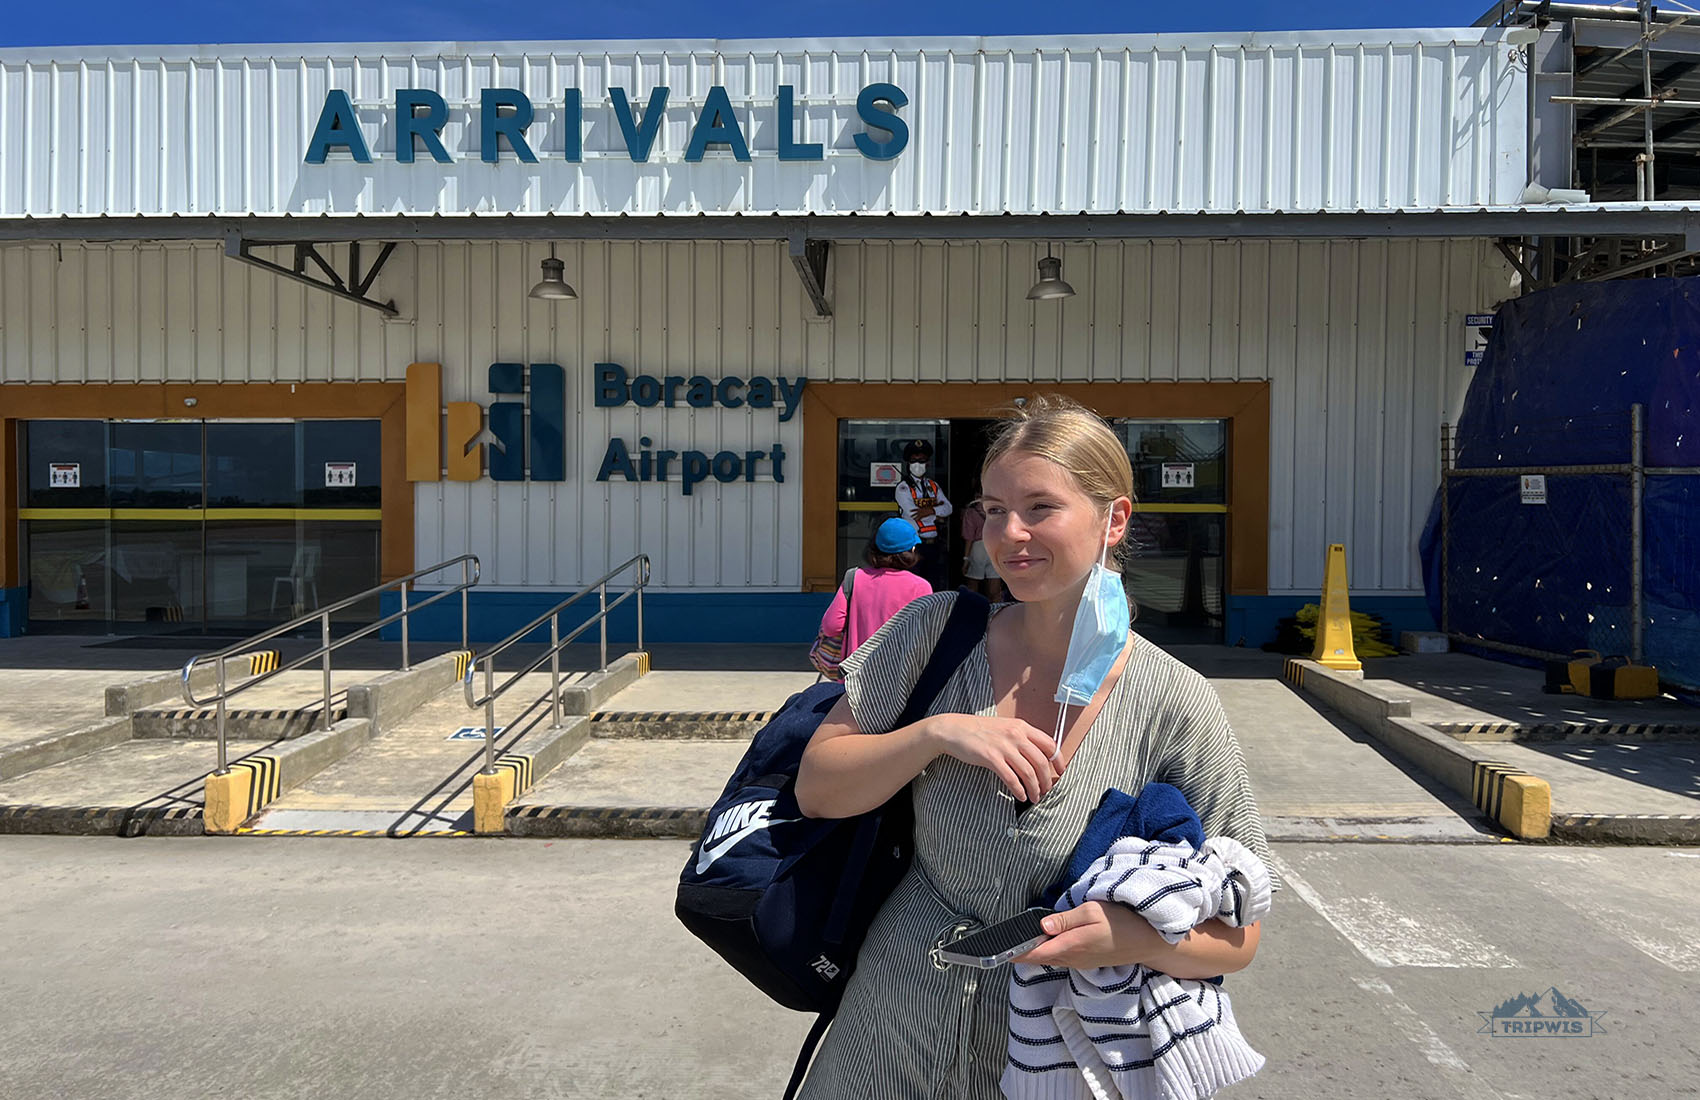 Boracay Airport arrivals